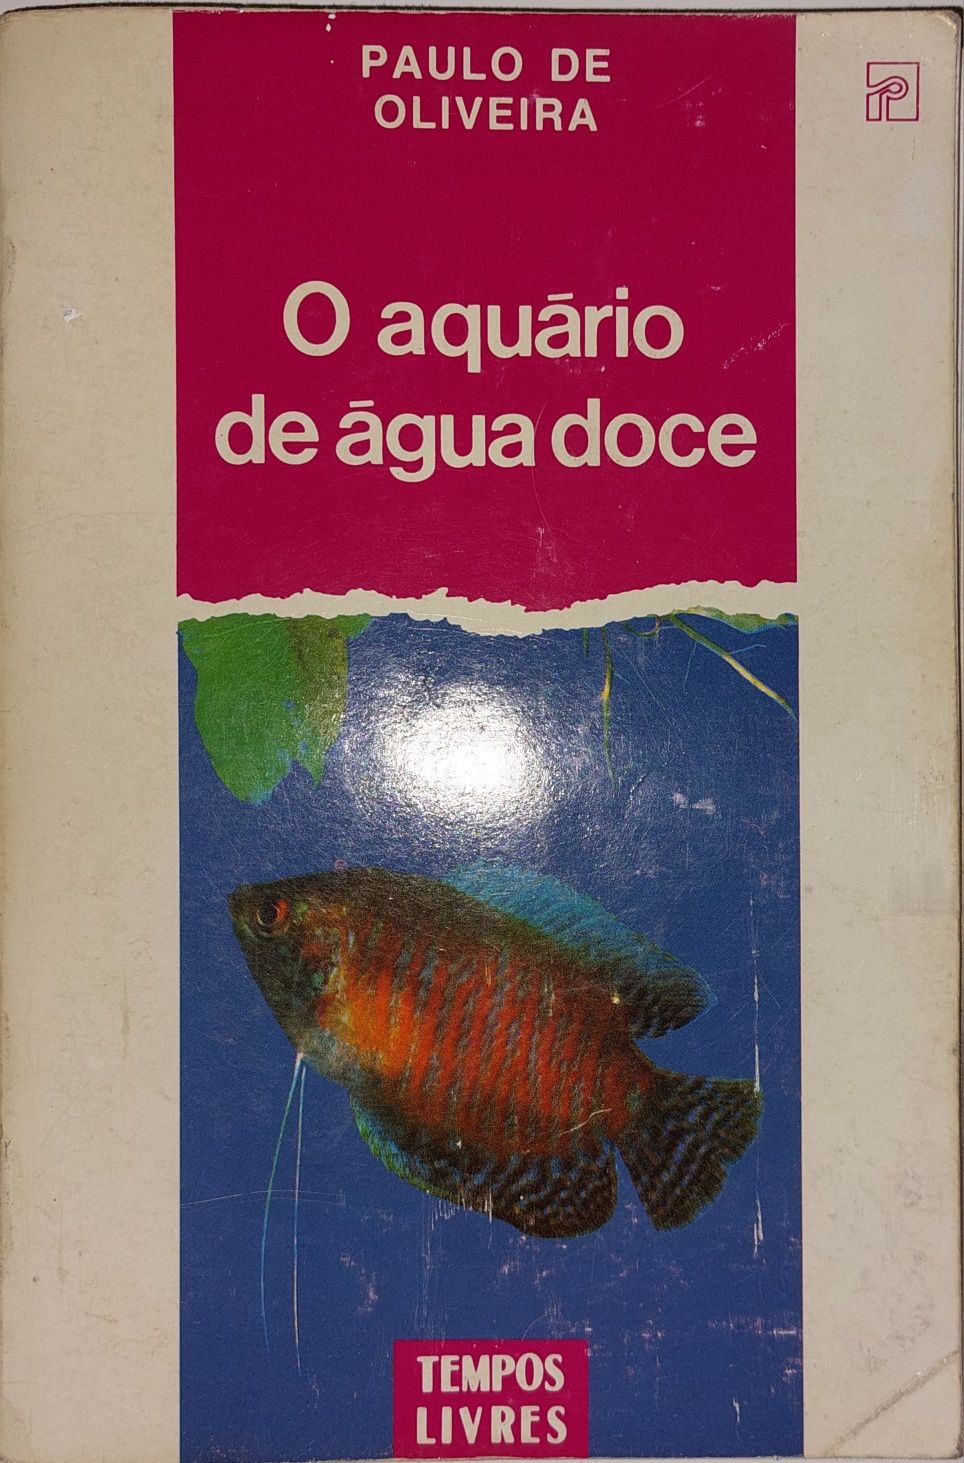 Livro "O Aquário de Água Doce" de Paulo de Oliveira